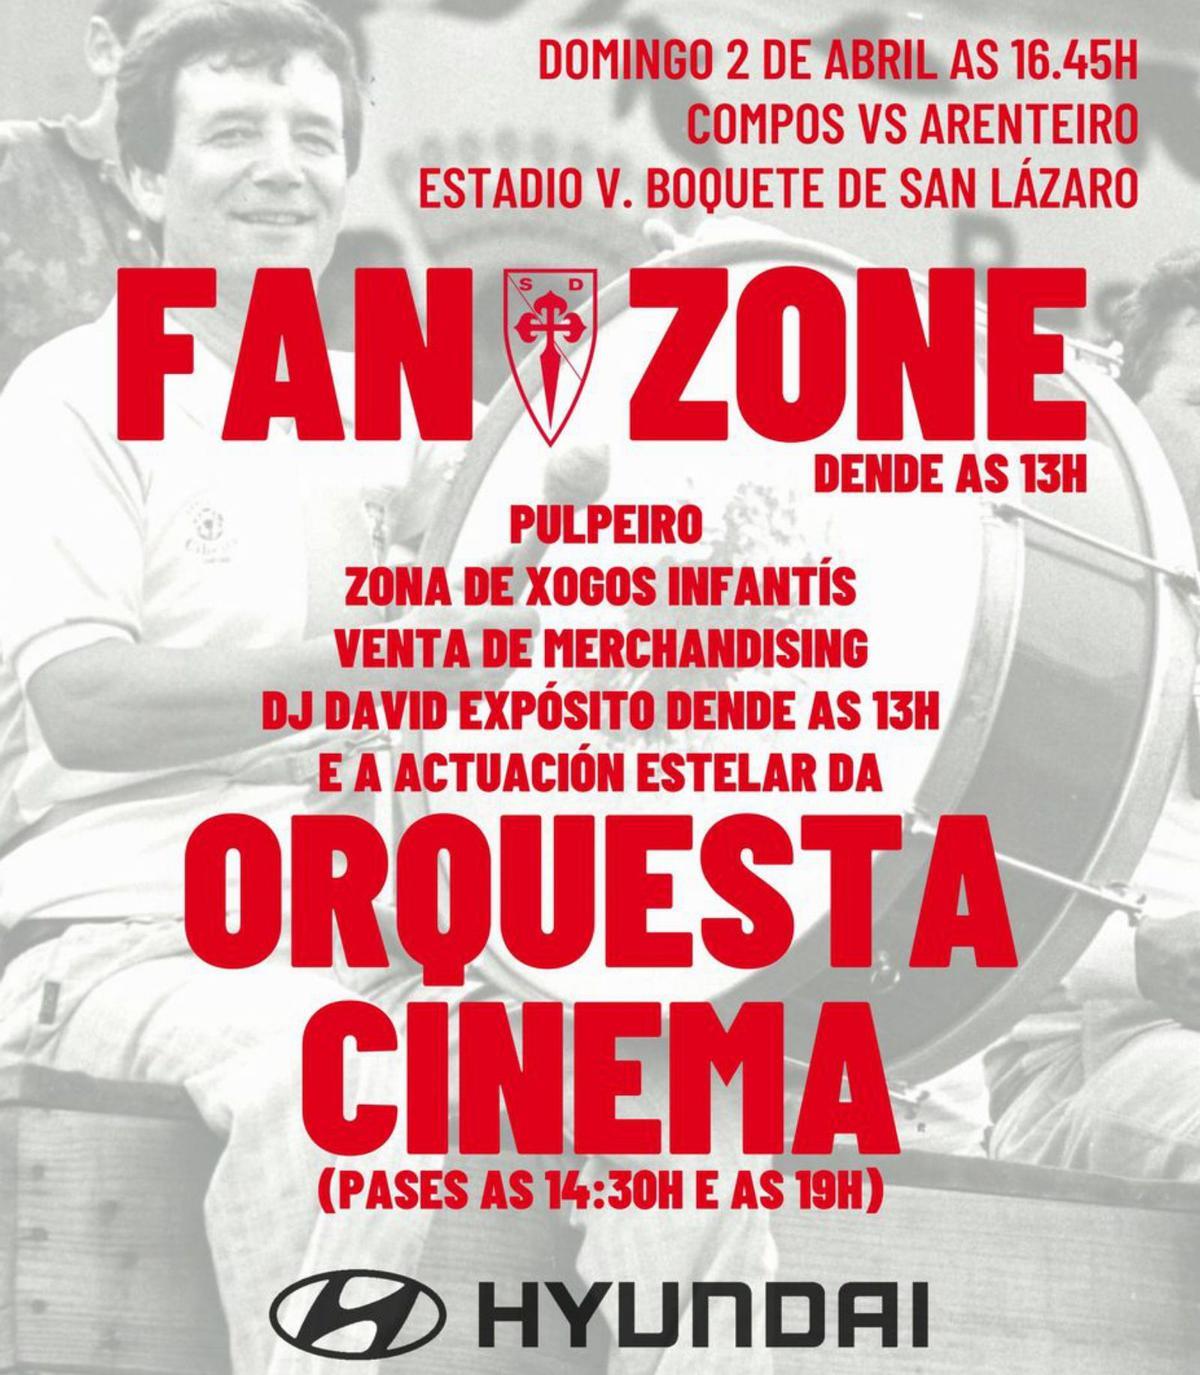 Cartel que anuncia la Fan Zone Cinema que animará el derbi del domingo